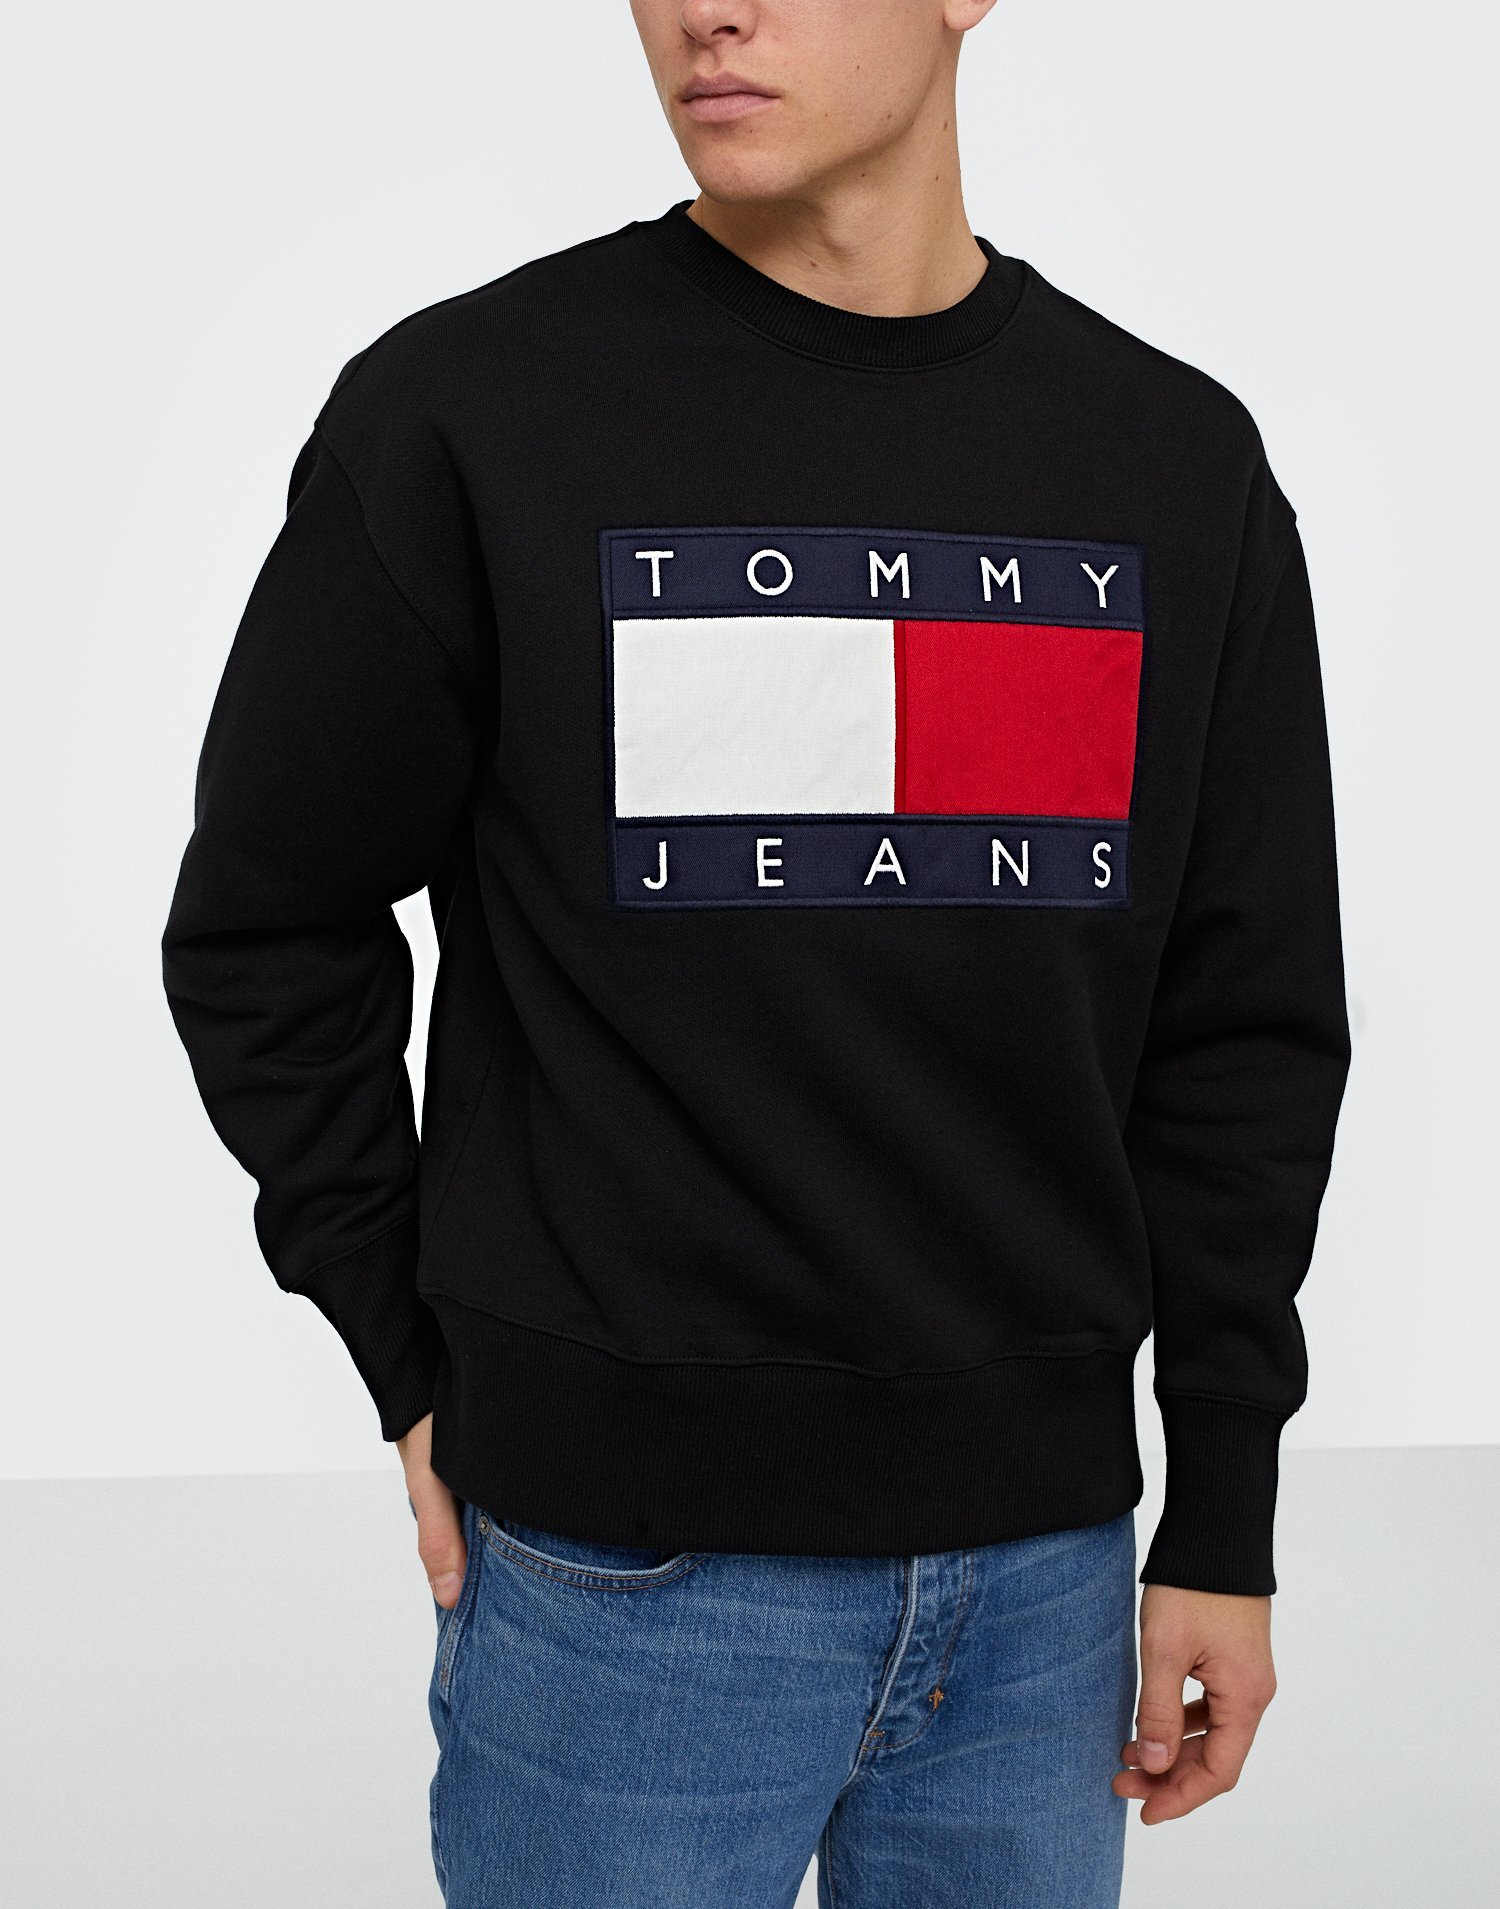 tommy jeans sweatshirt sale